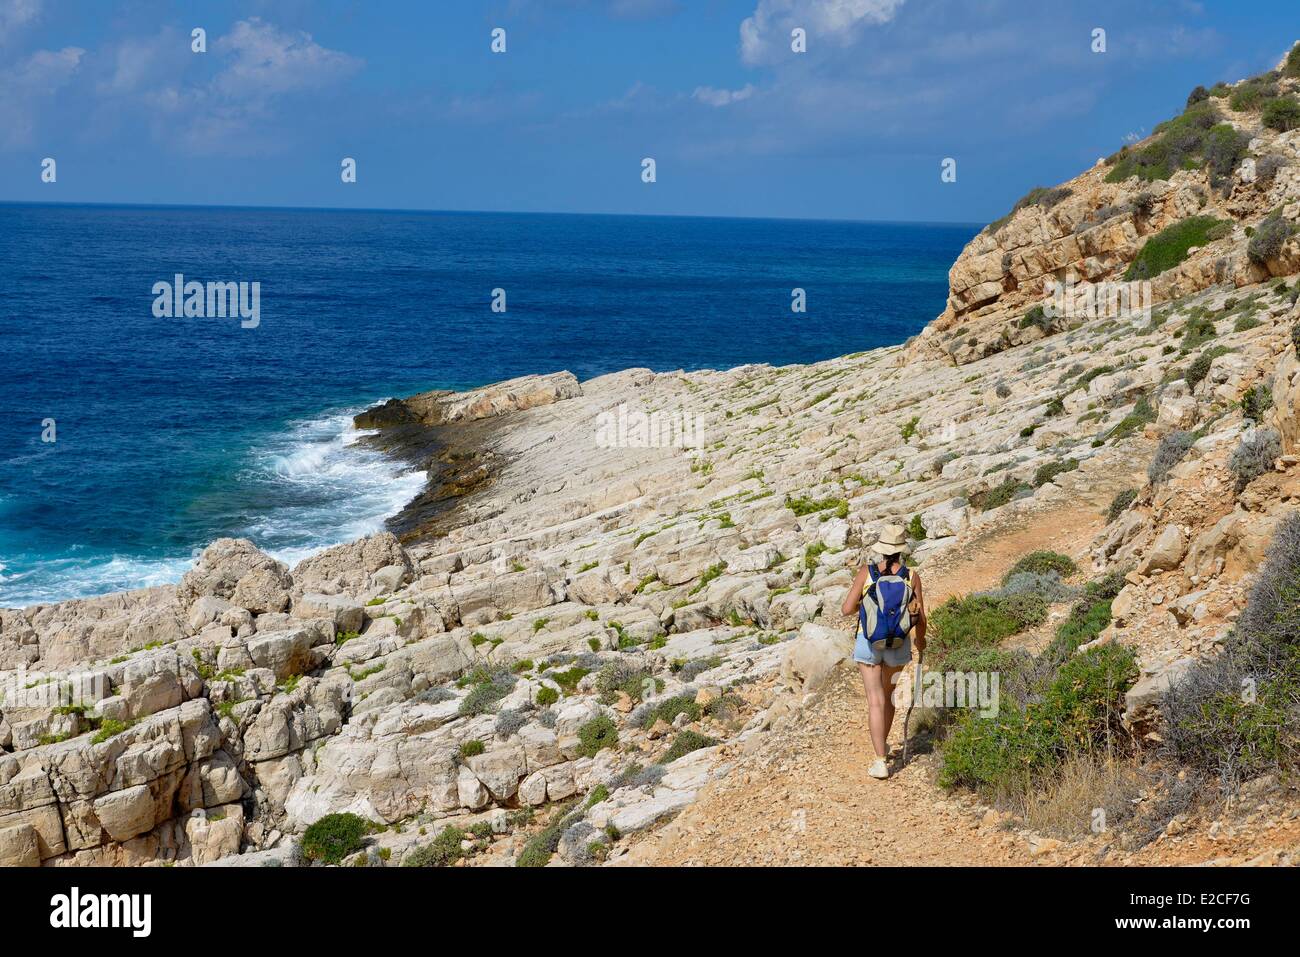 L'Italia, sicilia, isole Egadi, isola di Levanzo, shoal Faraglione, escursionista affacciato sul mare verso le grotte Genovese Foto Stock